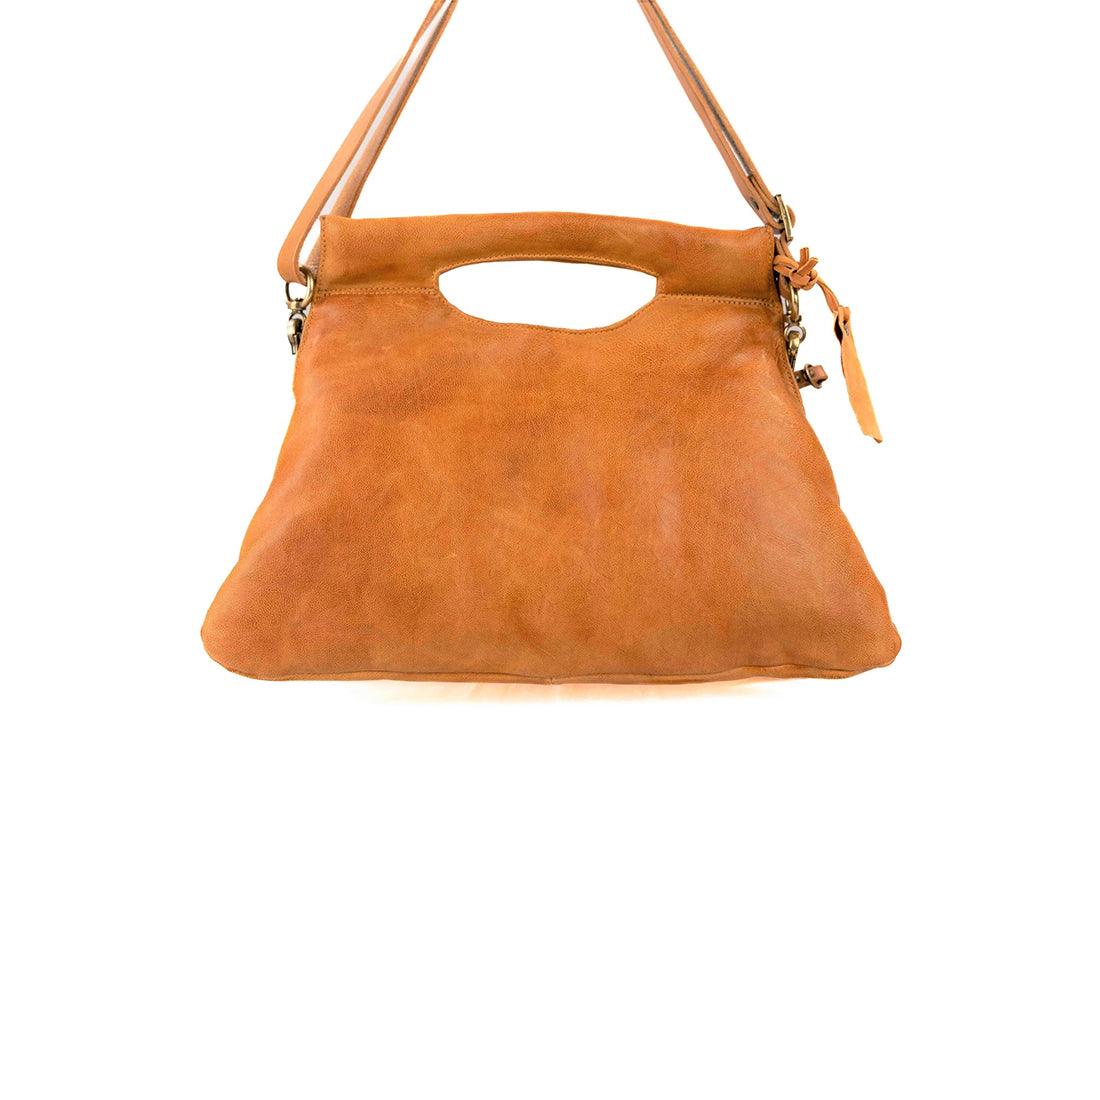 Harper - A.S. 98 - Handbags